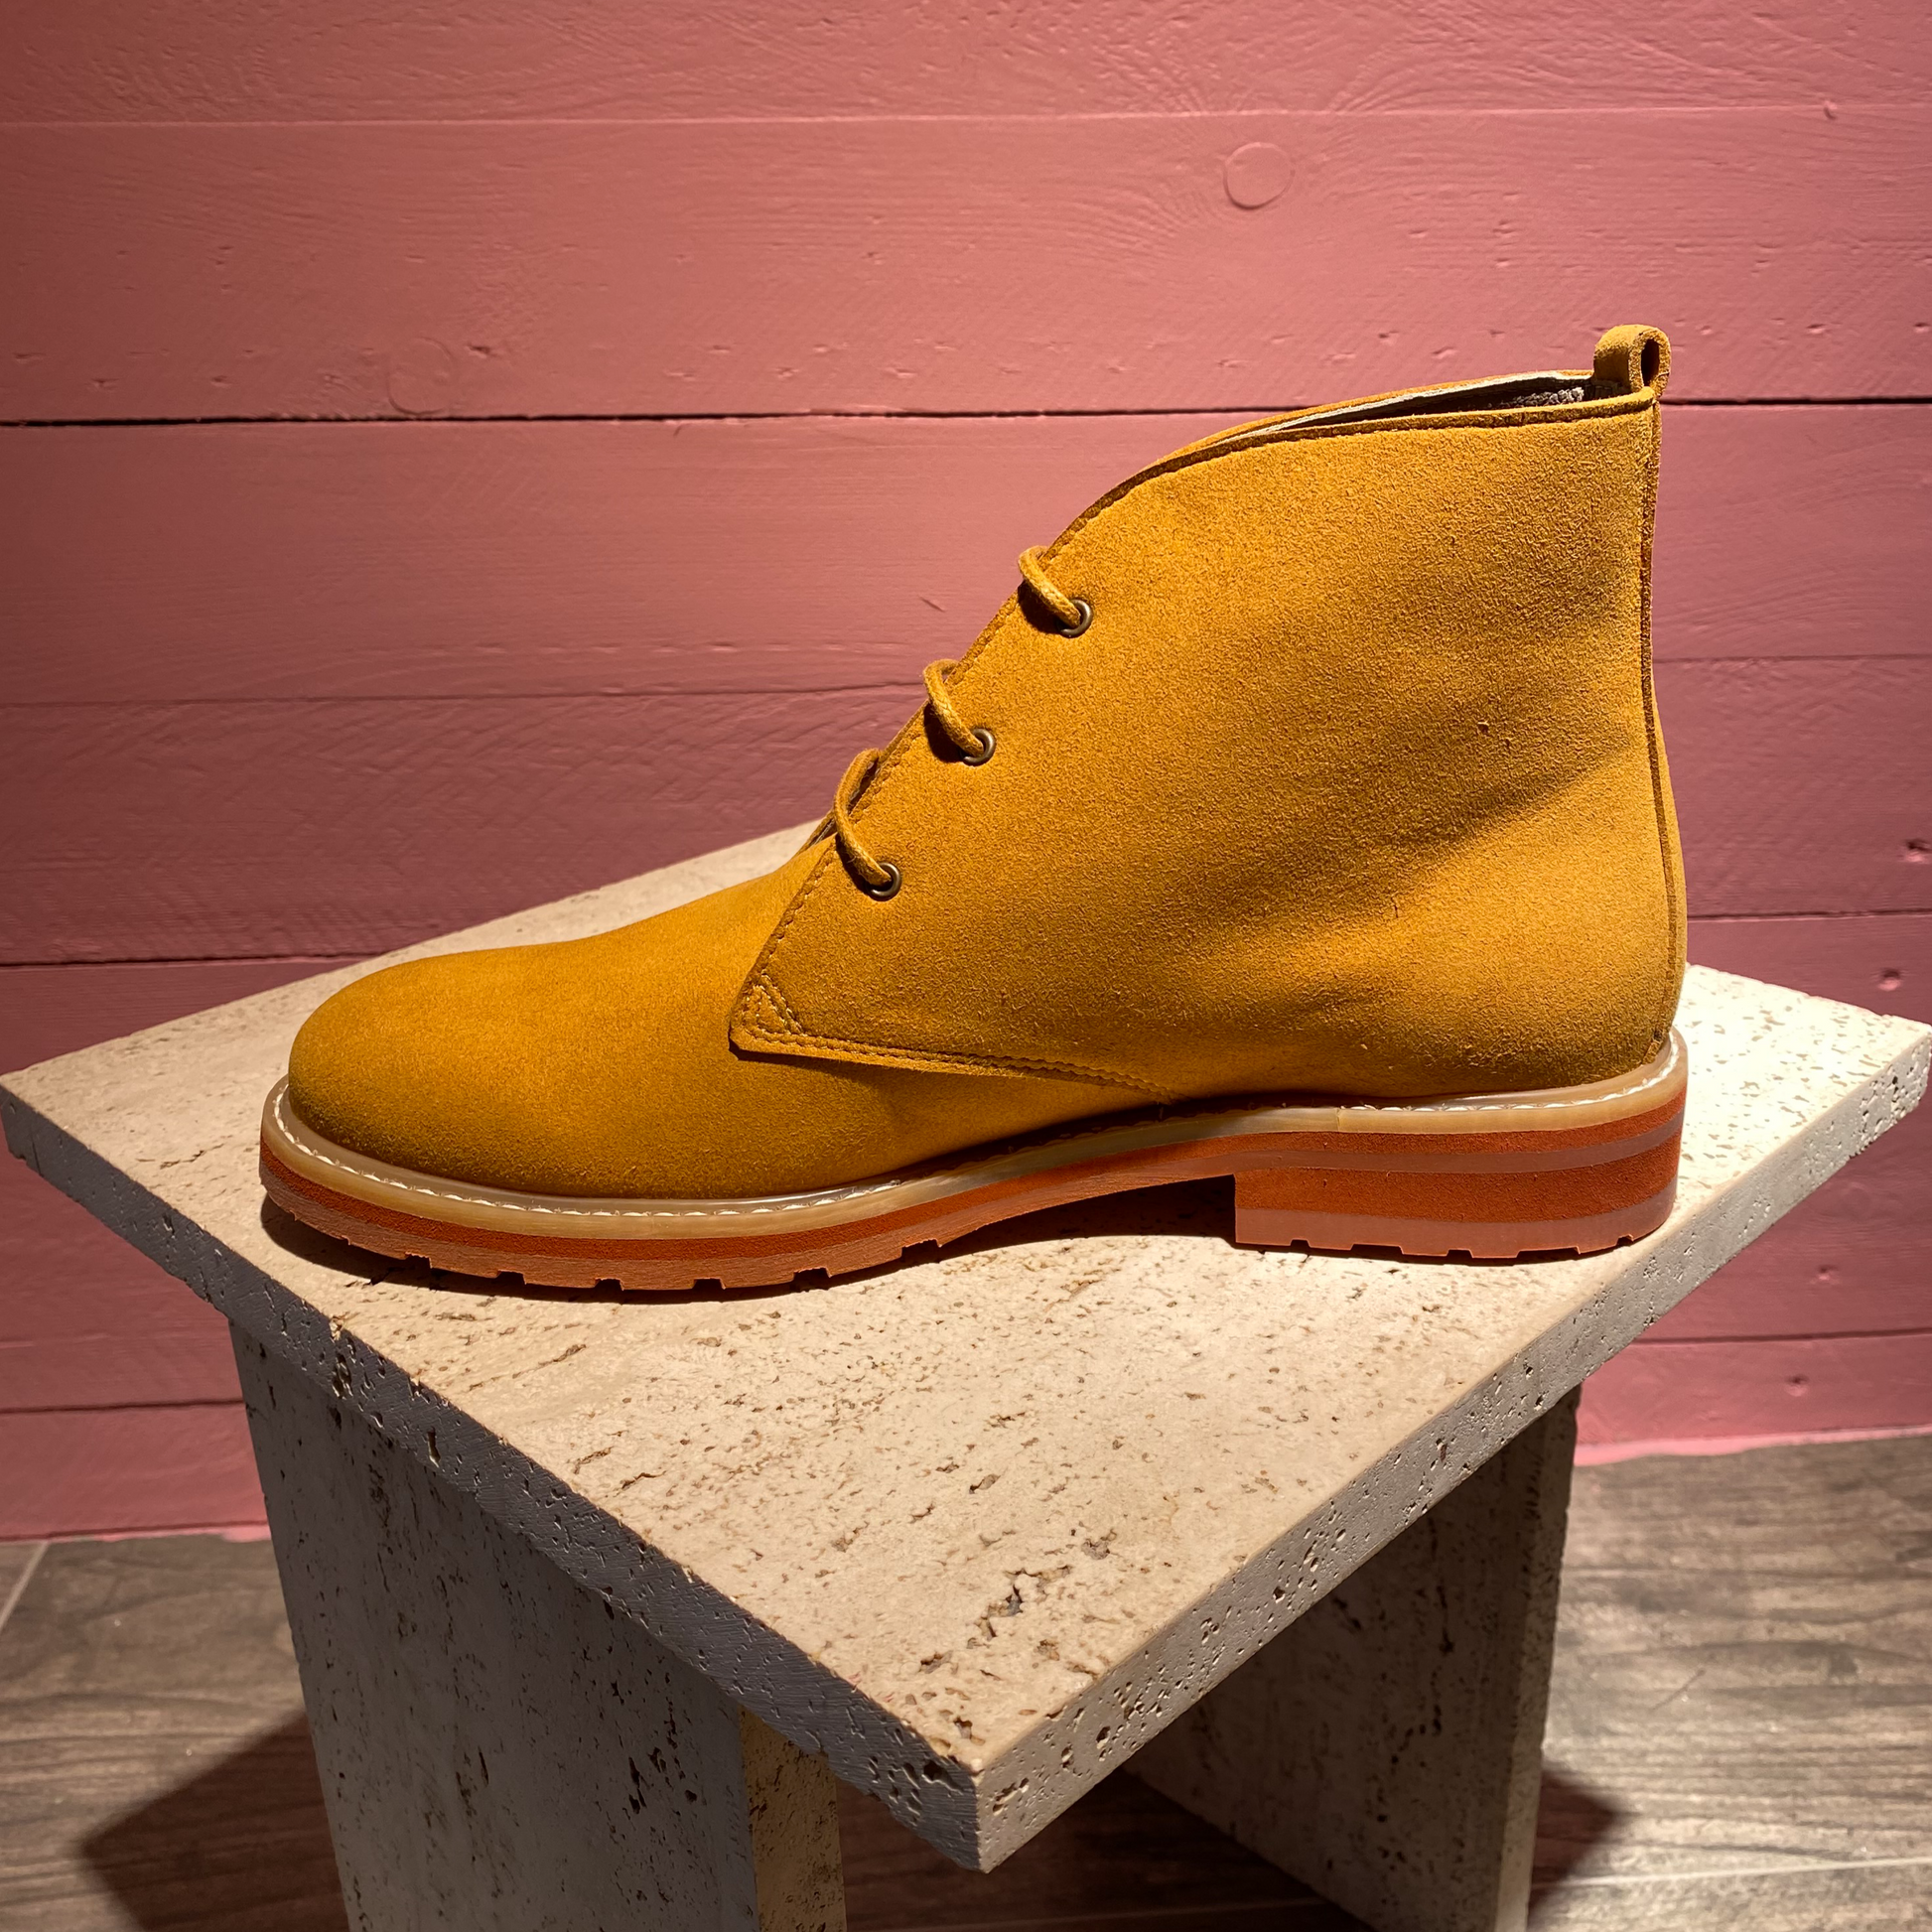 Desert boots en "suede" vegan. Ce design revisité par Good Guys Don't Wear Leather est iconique et sa semelle très légère cousue à la chaussure assure grande liberté de mouvement.